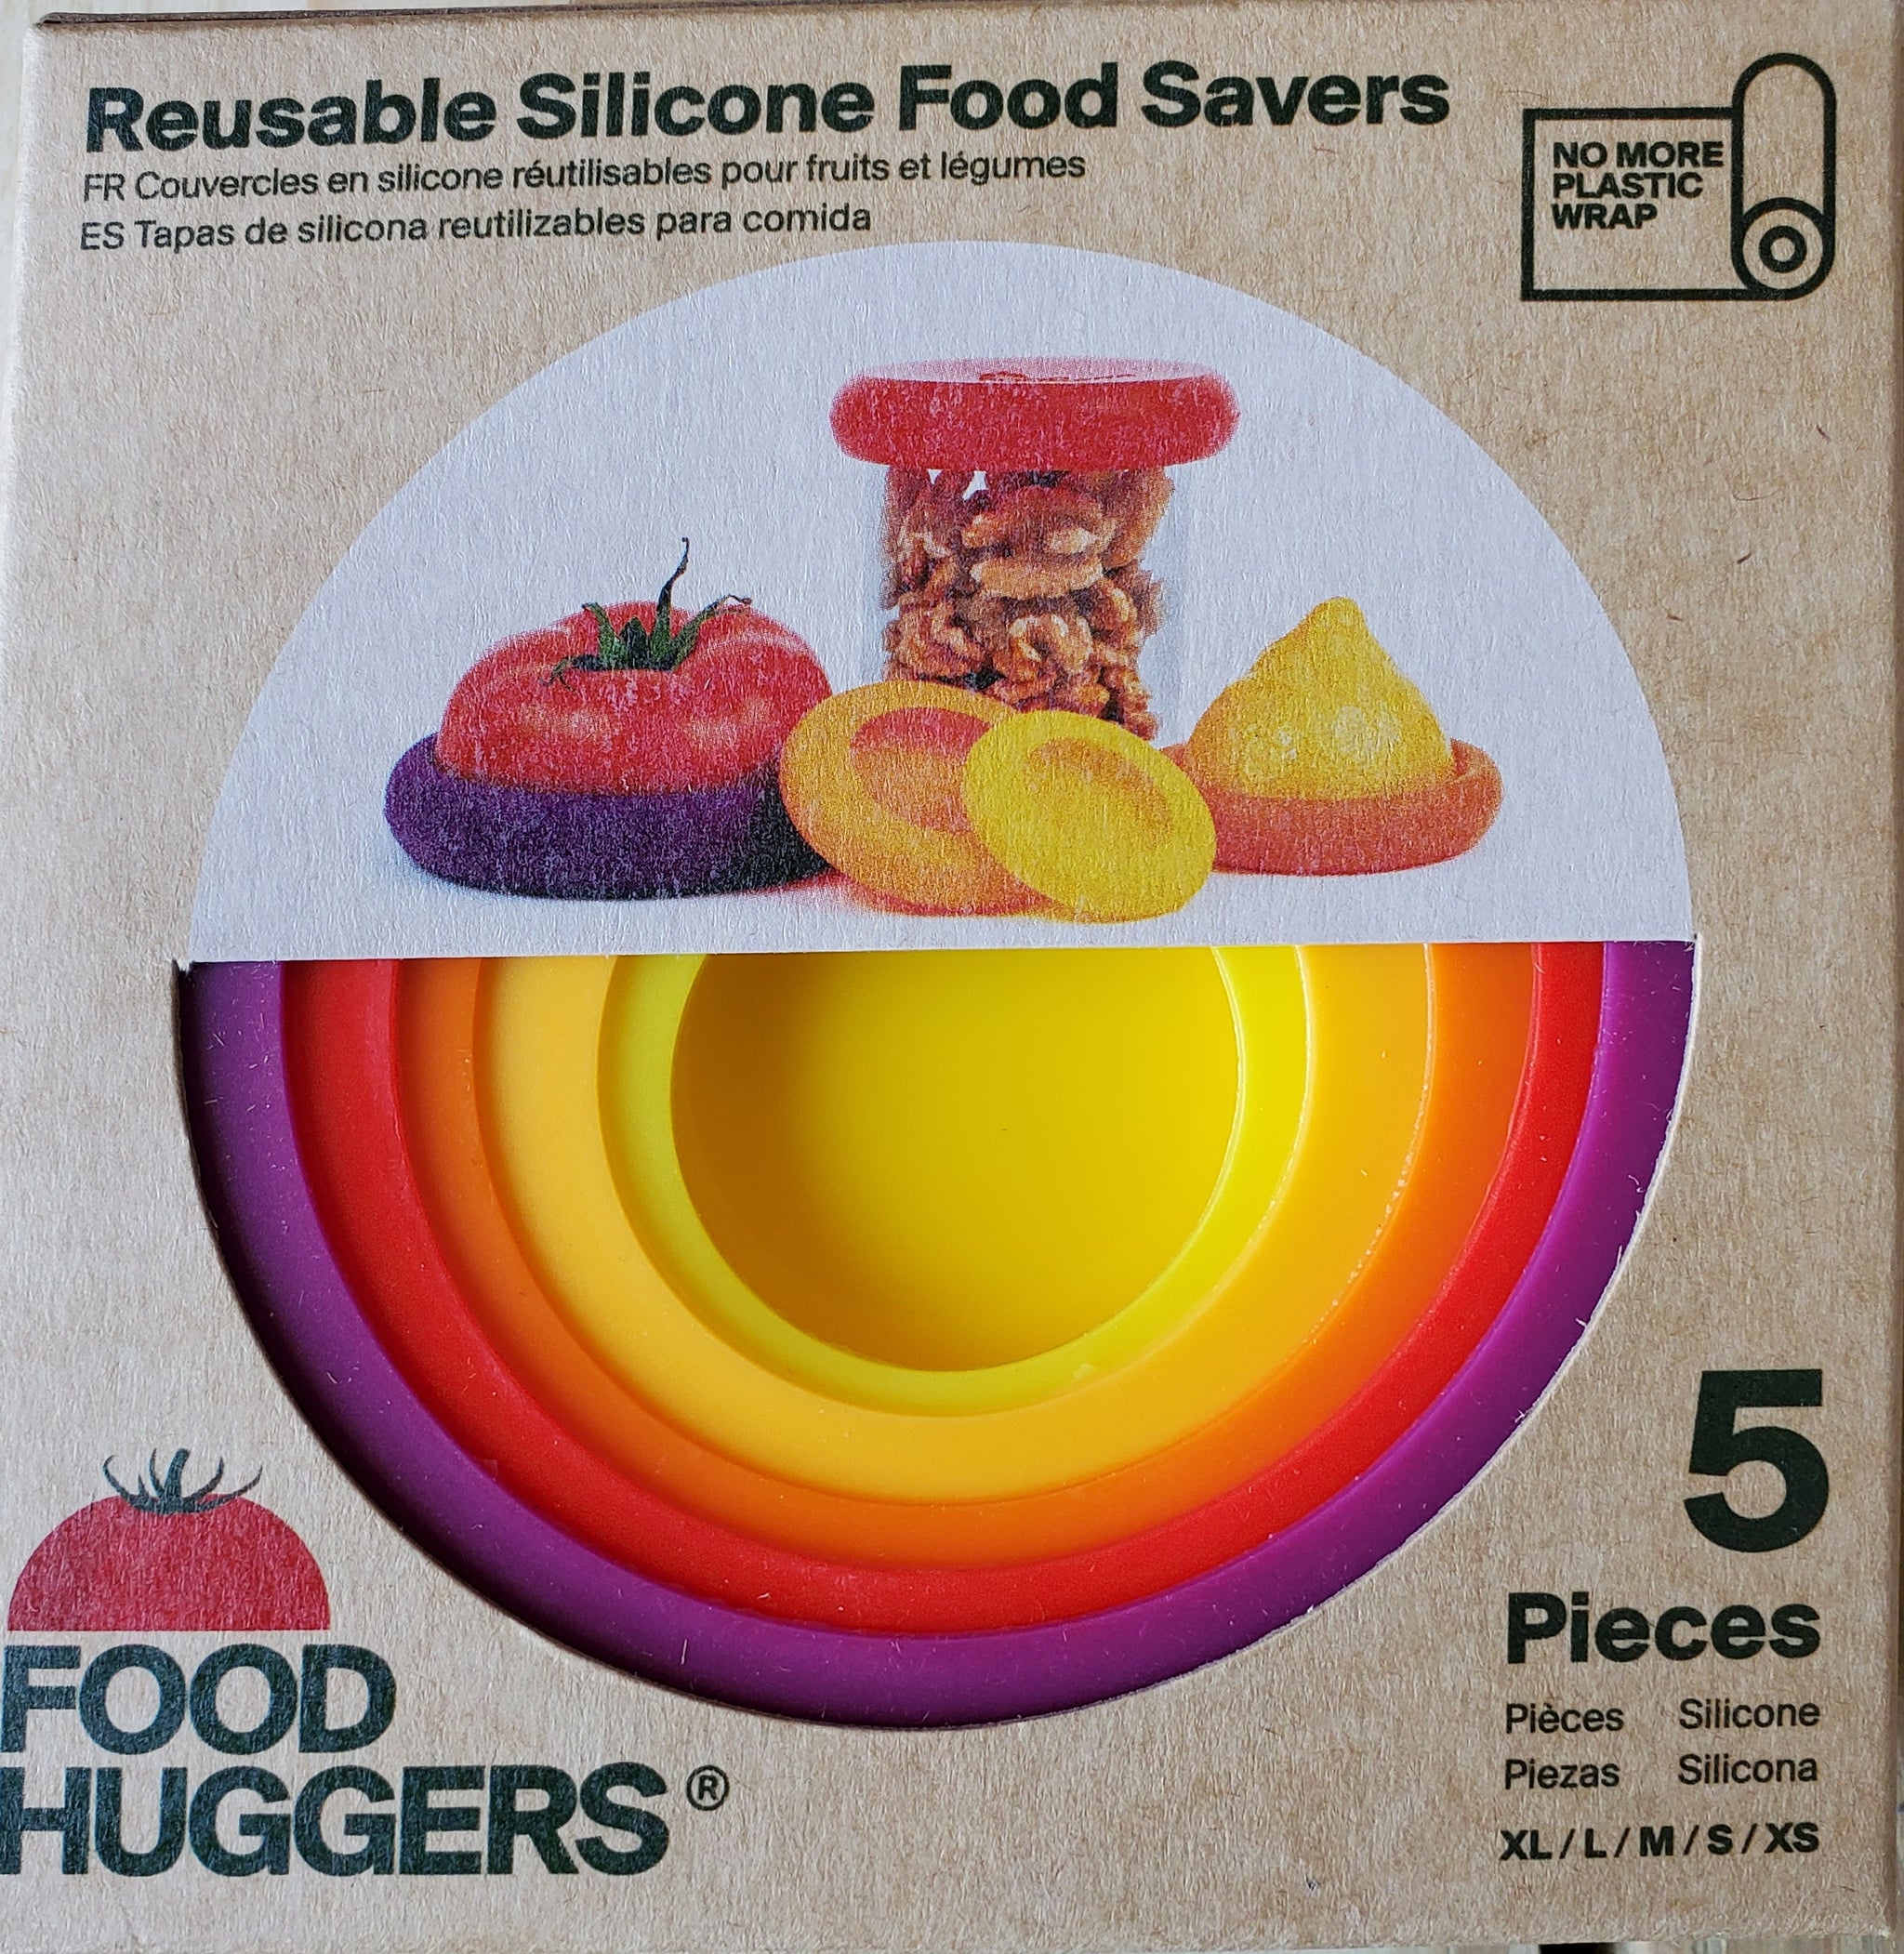 Reusable Silicone Food Savers